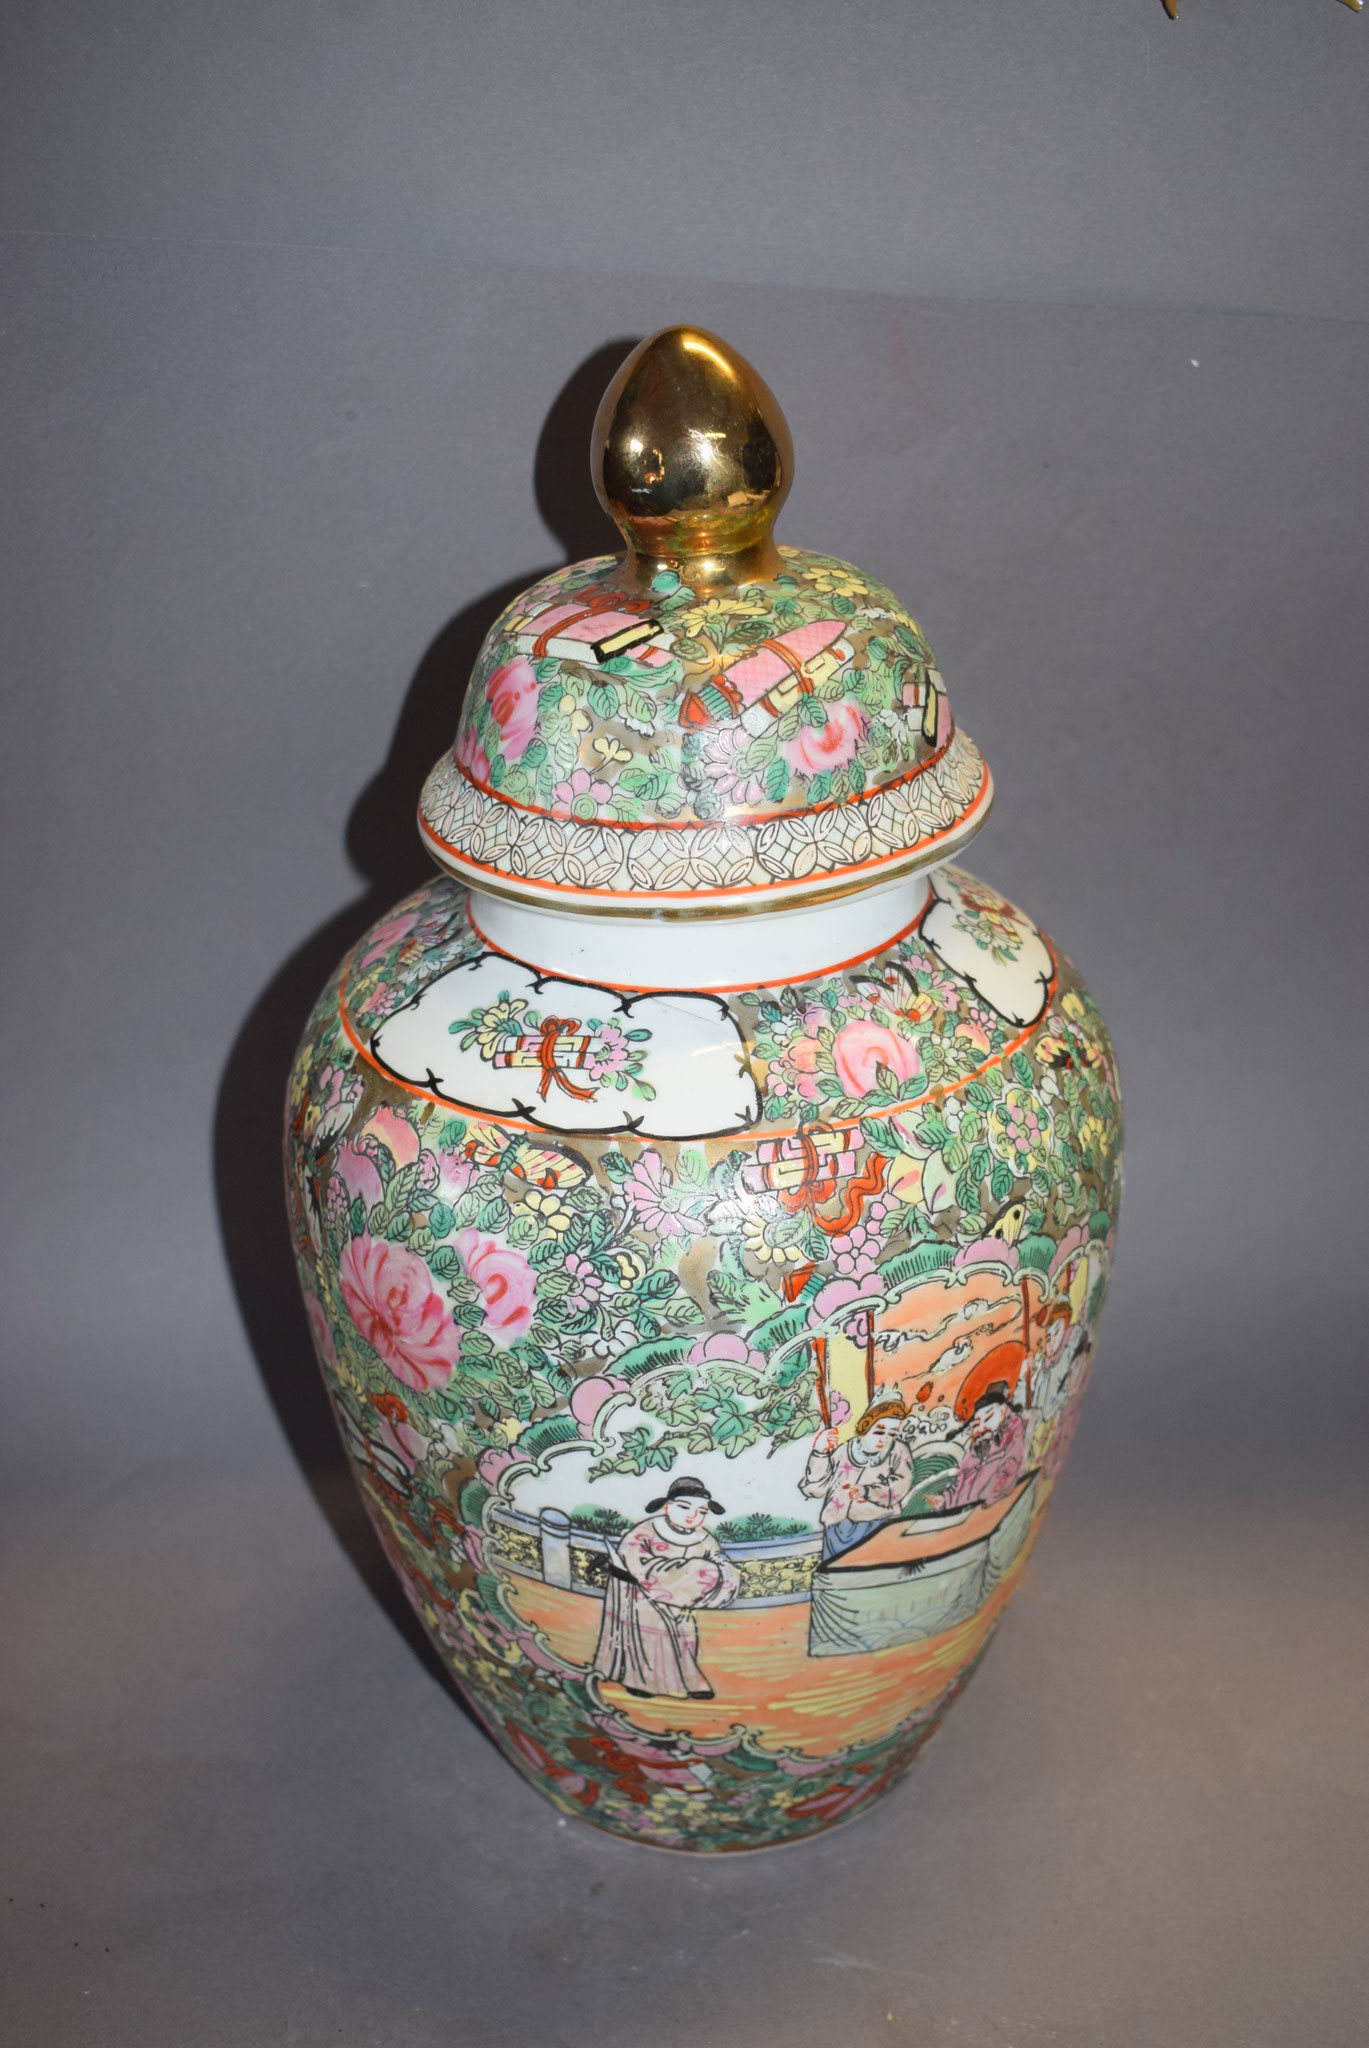 Porzellan Spitzdeckelvase mit "Familie Rose Motiv" und floraler Malerei, h=37cm